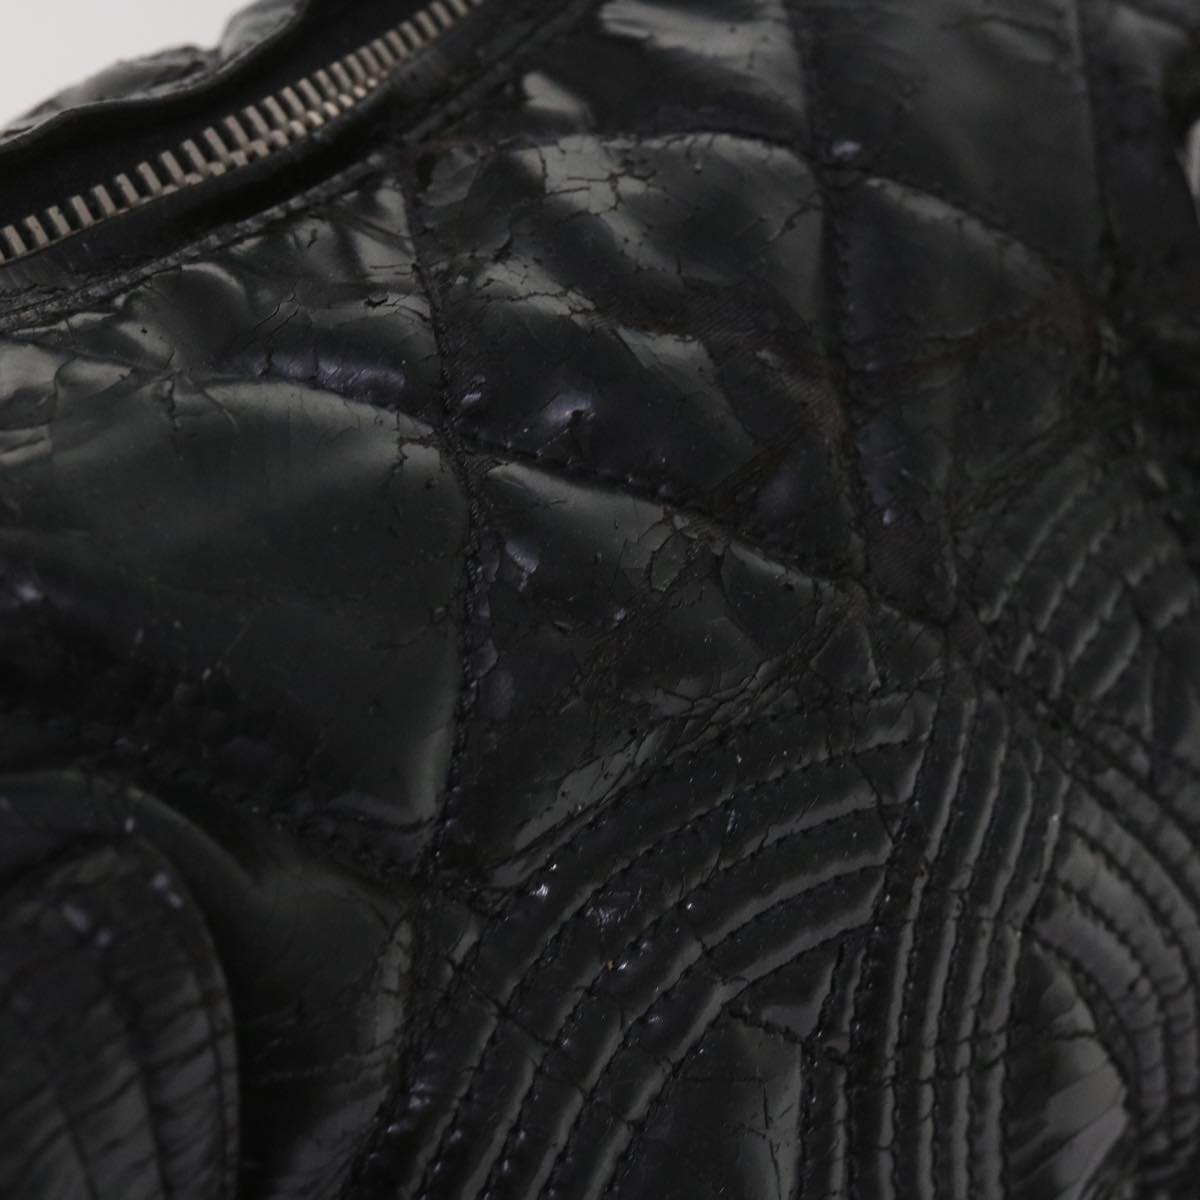 CHANEL Shoulder Bag Patent leather Black CC Auth bs11782